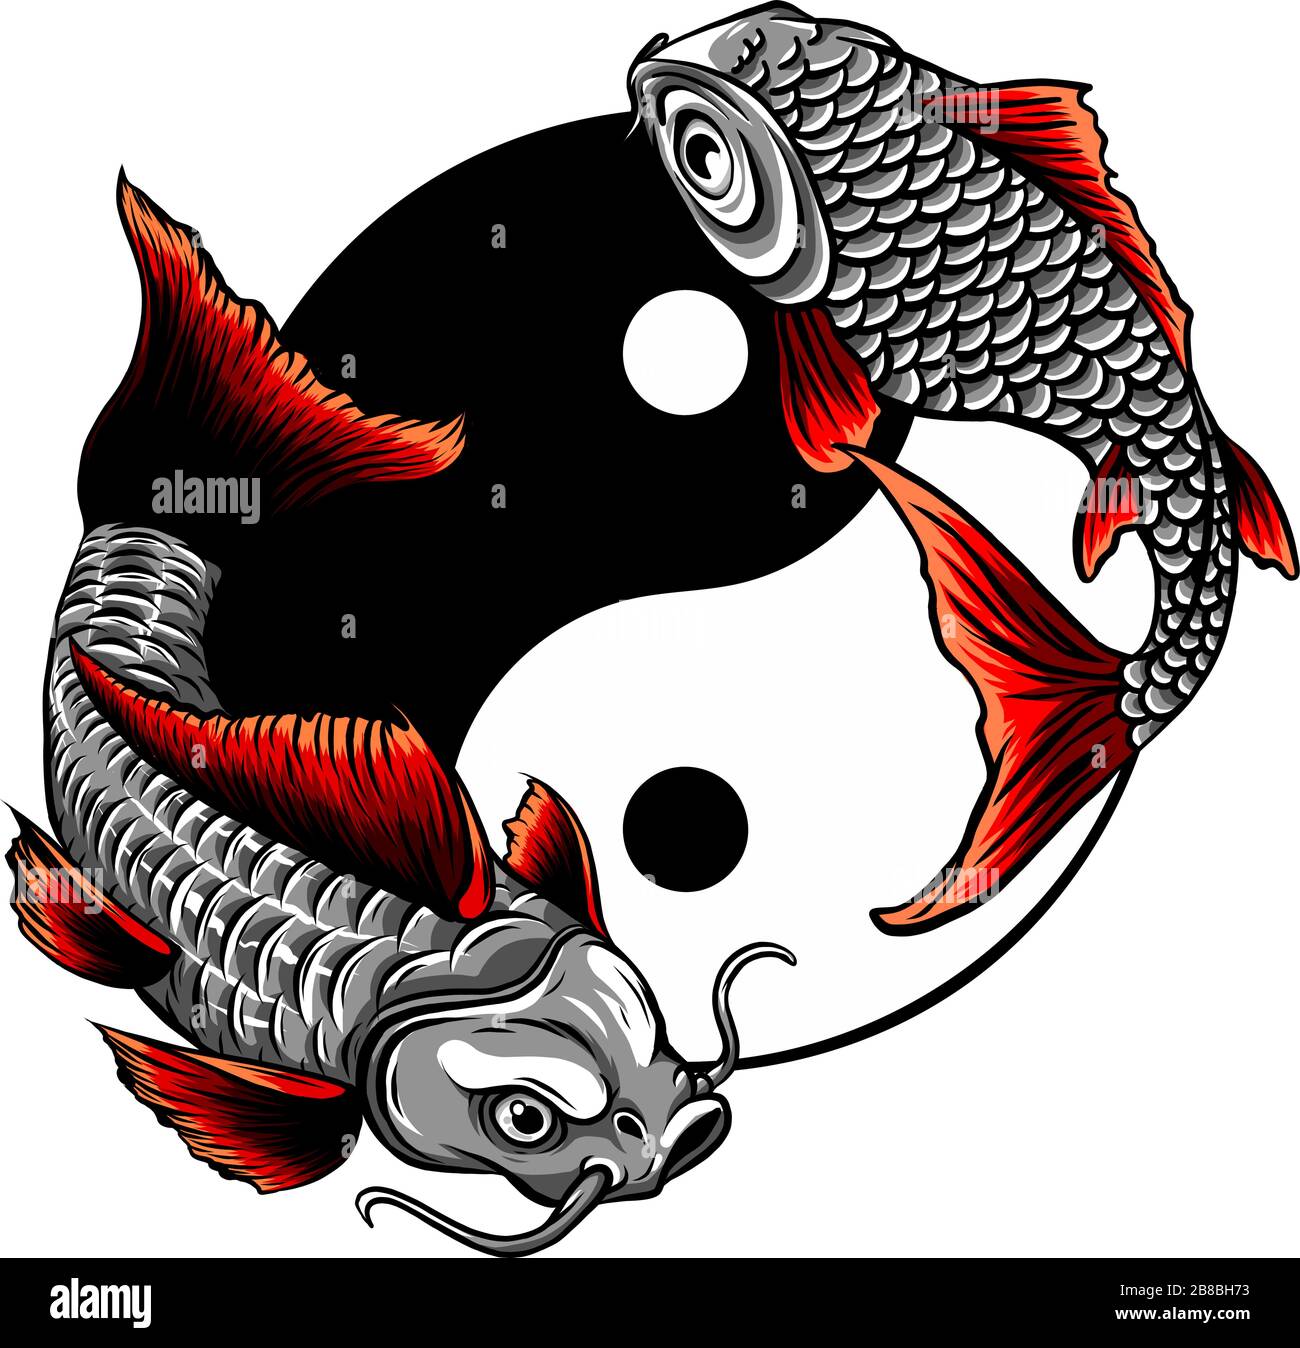 Fish Yin Yang logo disegno di illustrazione vettoriale Illustrazione Vettoriale